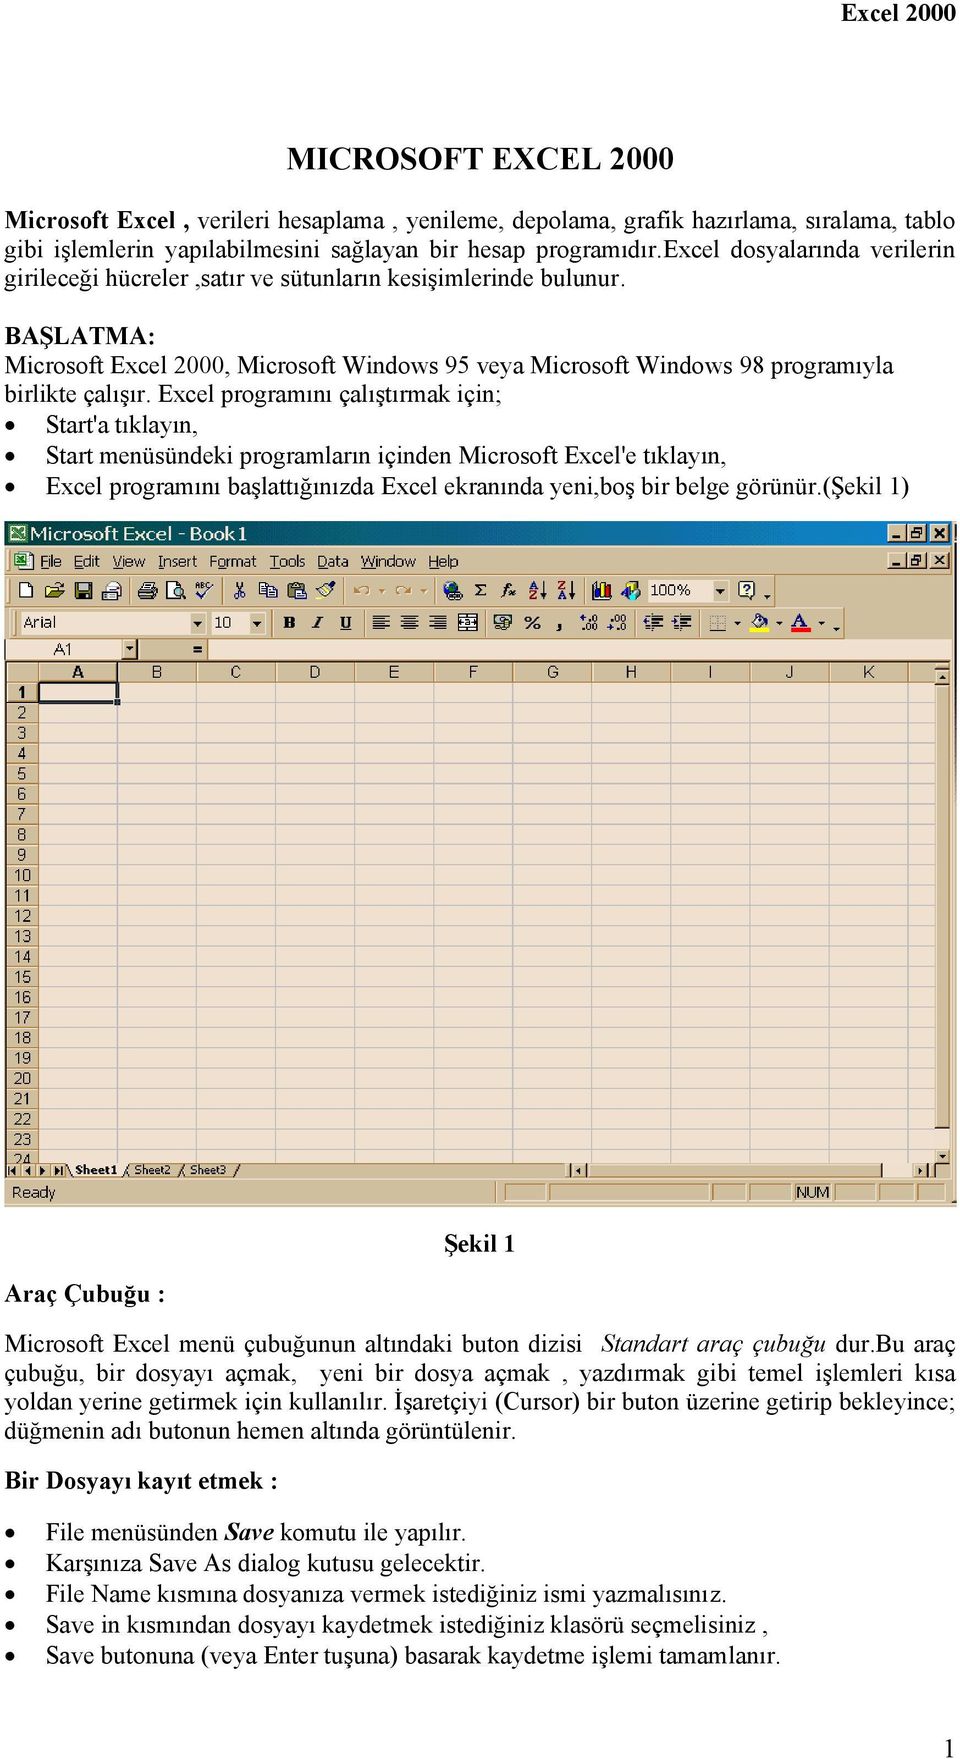 BAŞLATMA: Microsoft Excel 2000, Microsoft Windows 95 veya Microsoft Windows 98 programıyla birlikte çalışır.